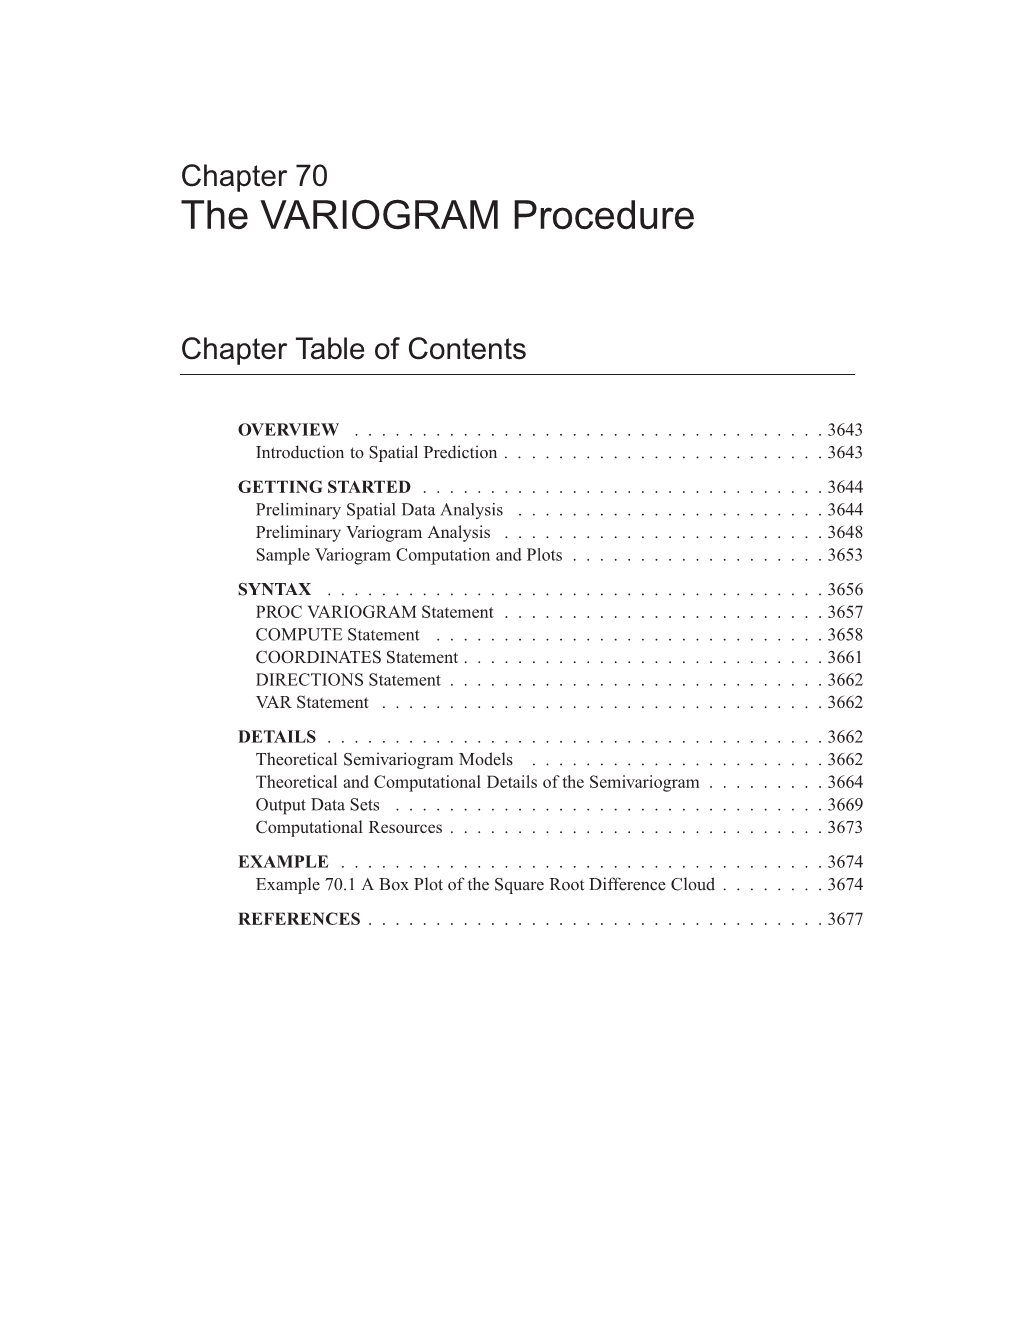 The VARIOGRAM Procedure